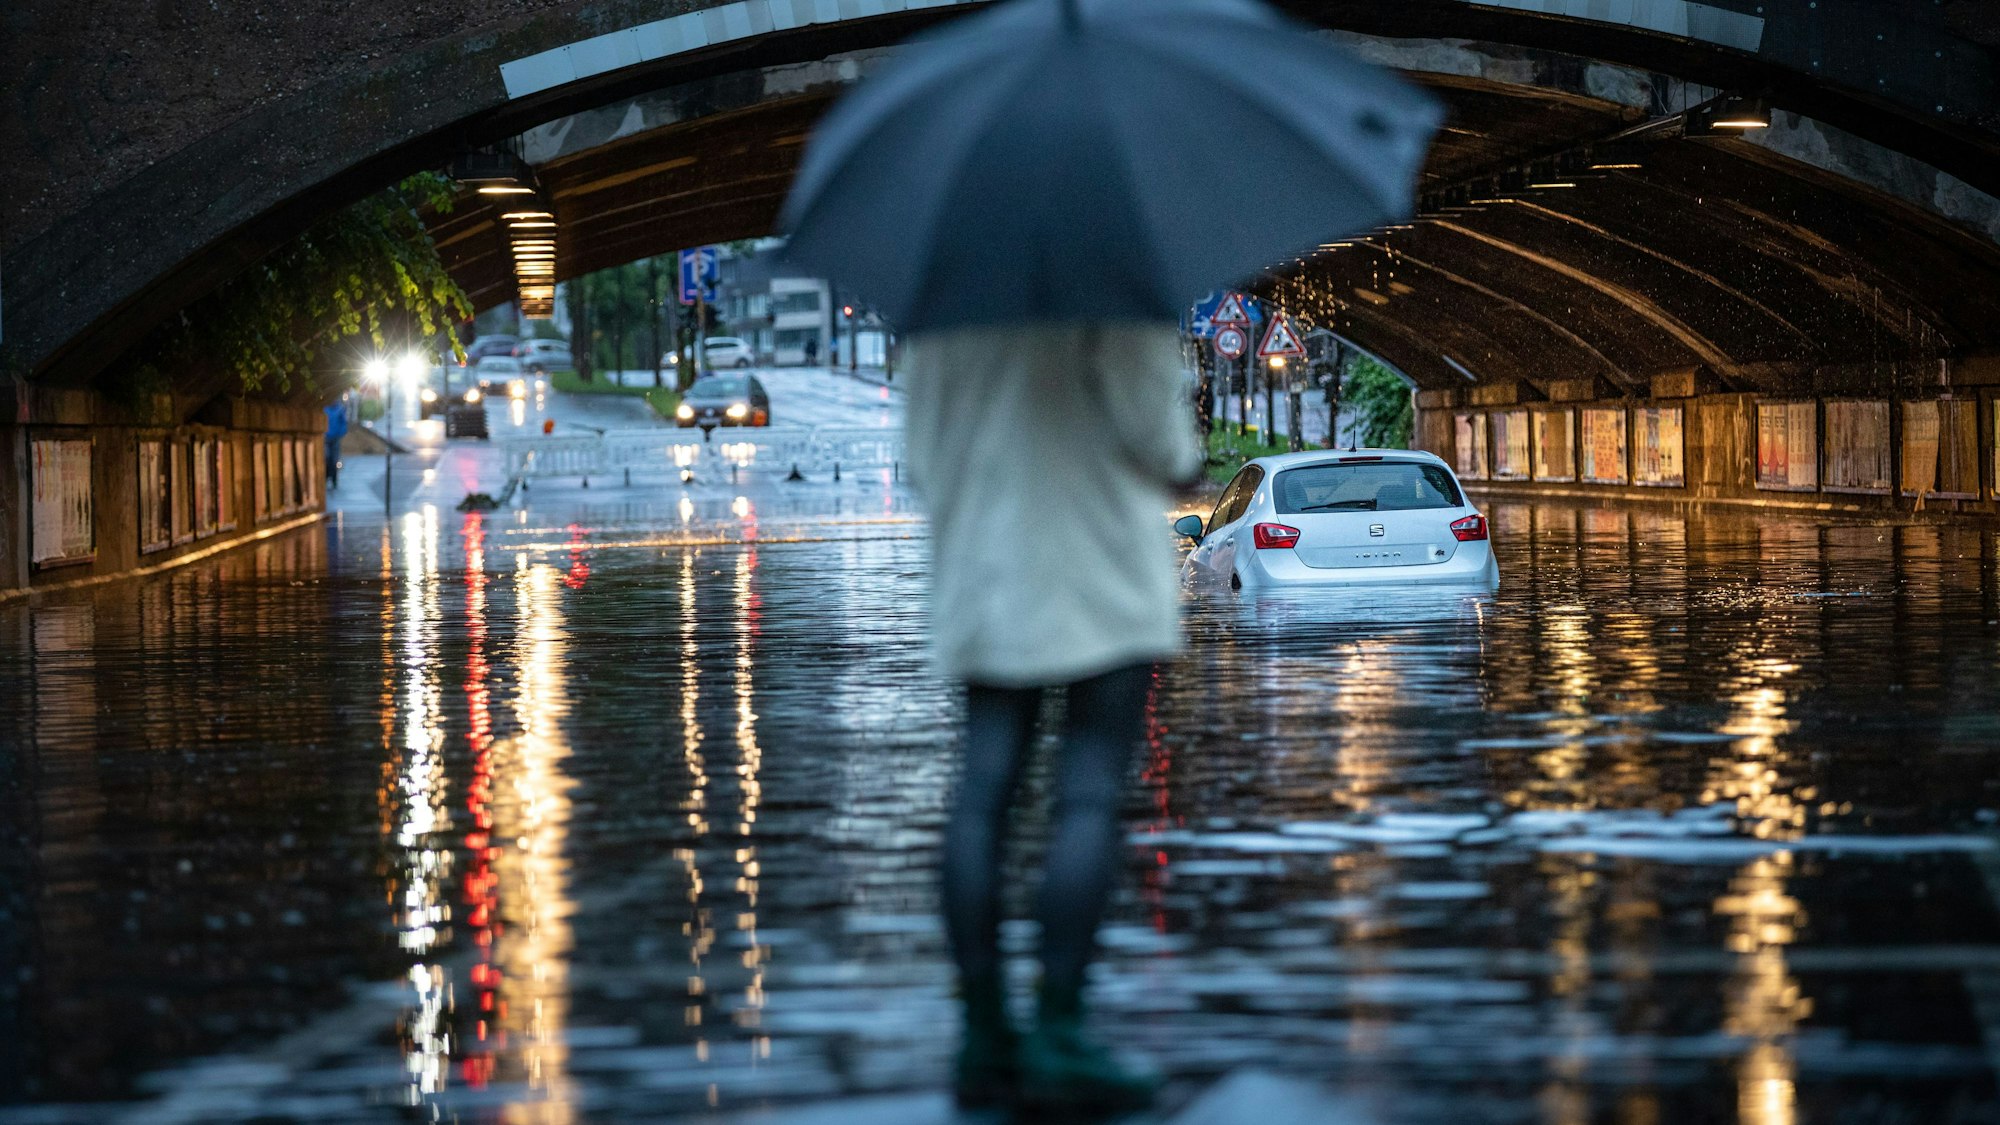 Die Unterführung zwischen Pohligstraße und Weißhausstraße ist komplett überflutet und ein Auto ist im Wasser stecken geblieben. Dauerregen seit dem Morgen führt in der Stadt zu zahlreichen Schäden.